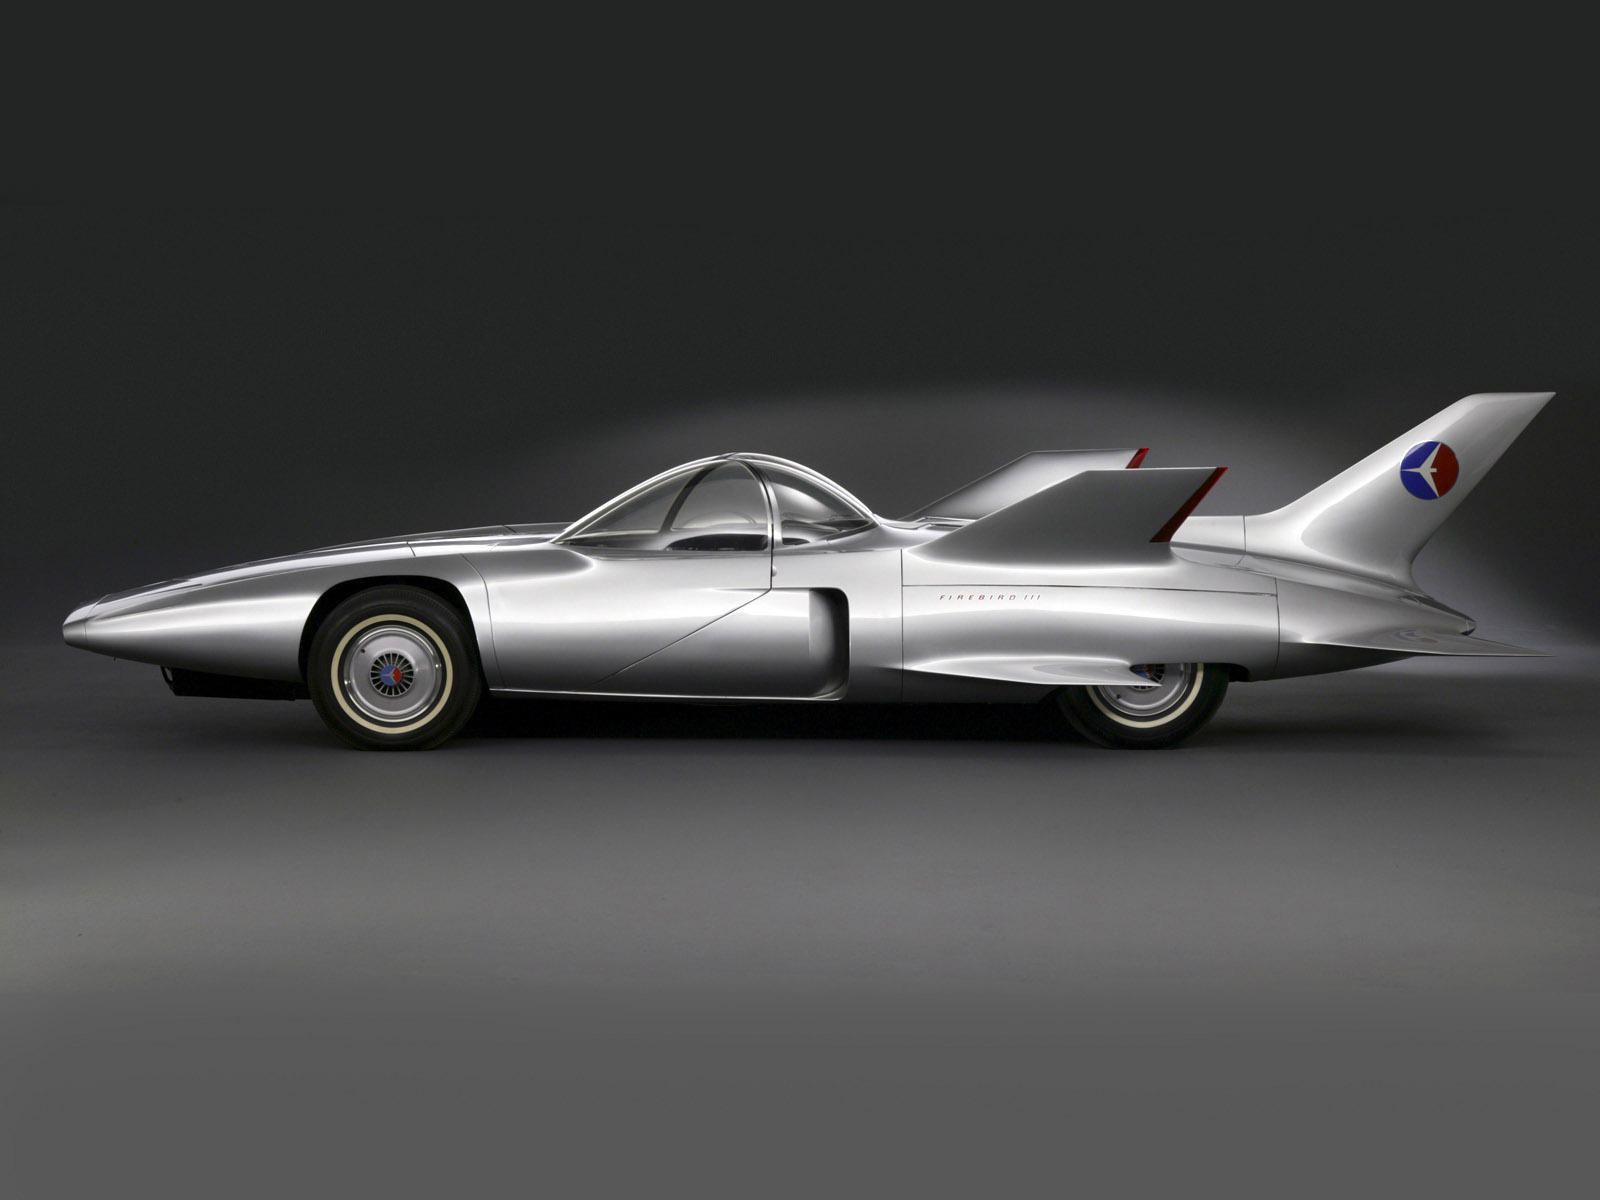 1958, Gm, Firebird, Iii, Concept, Retro, G m, Supercar, Supercars, Race, Racing, General, Motors Wallpaper